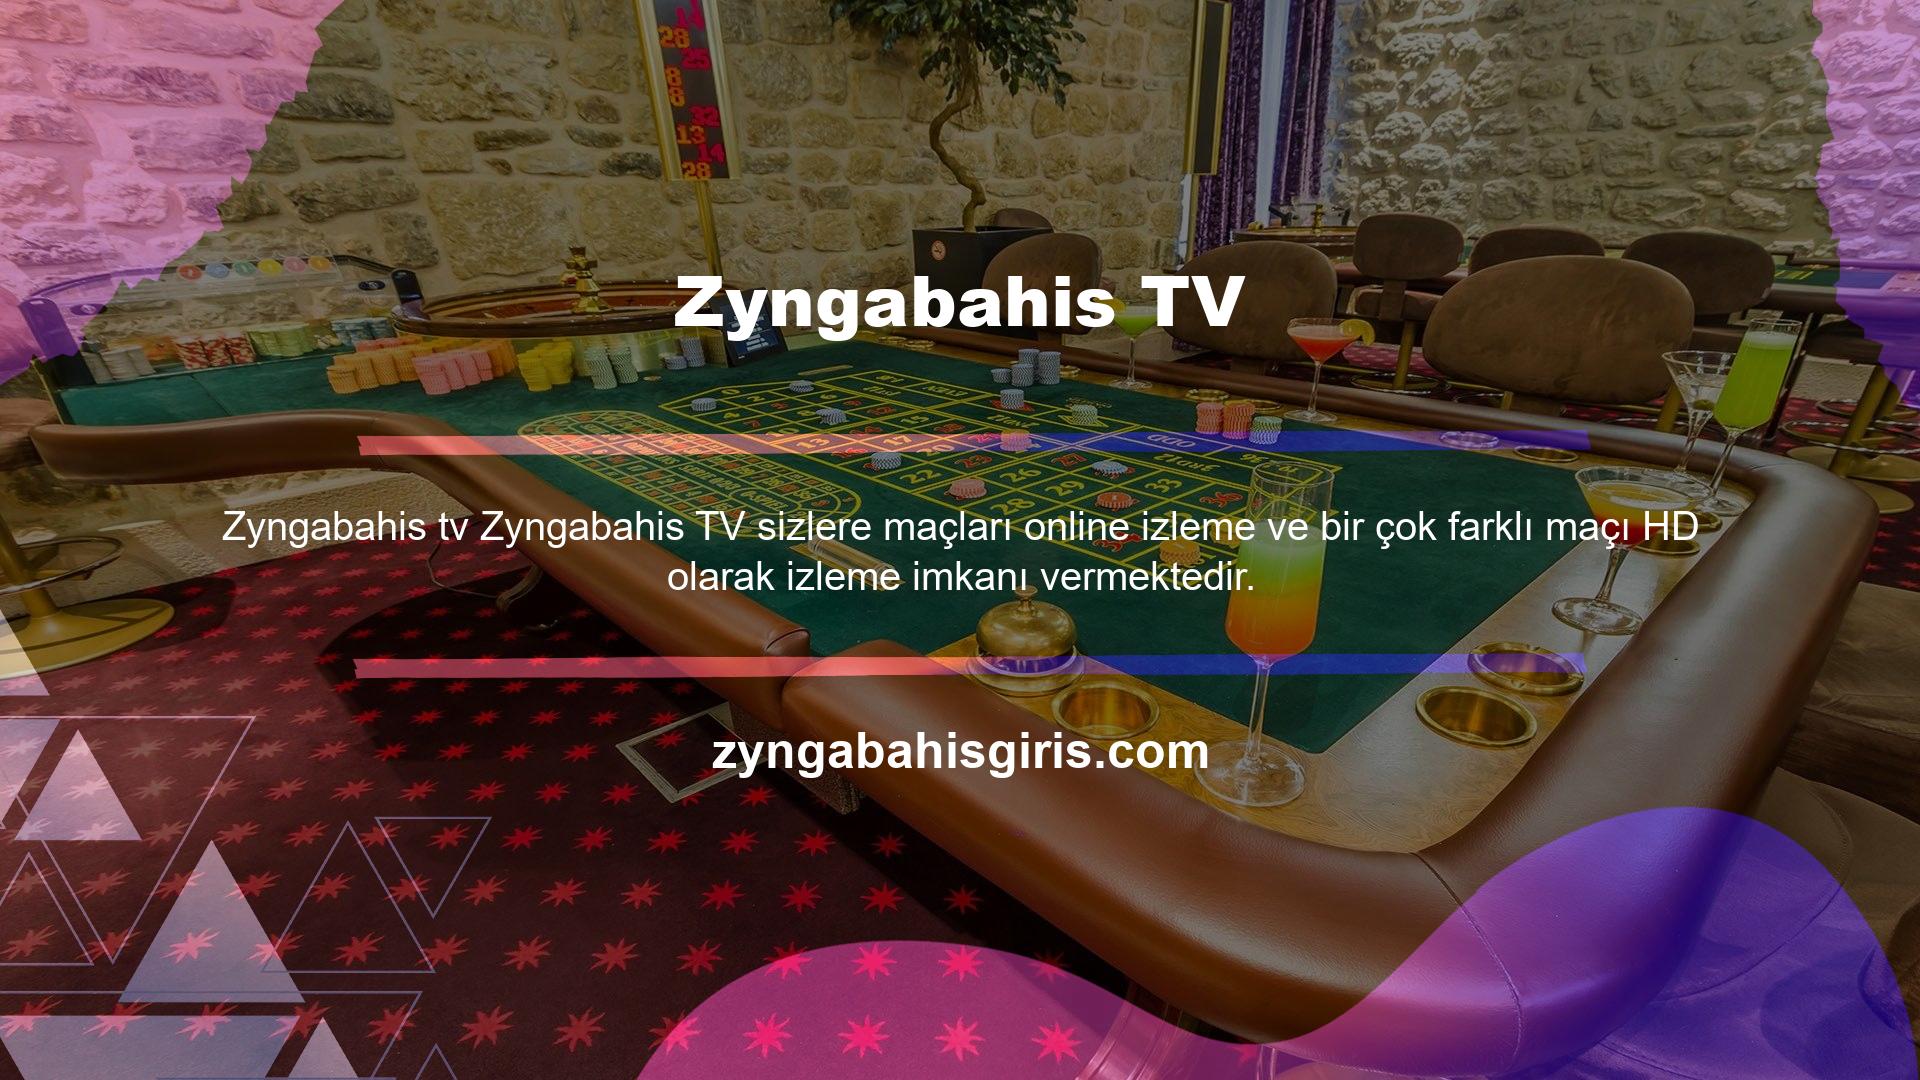 Zyngabahis, dünyanın birçok ülkesinde güvenli bir oyun ortamı oluşturmuş ve bunu bir dizi oyun seçeneği ile desteklemektedir